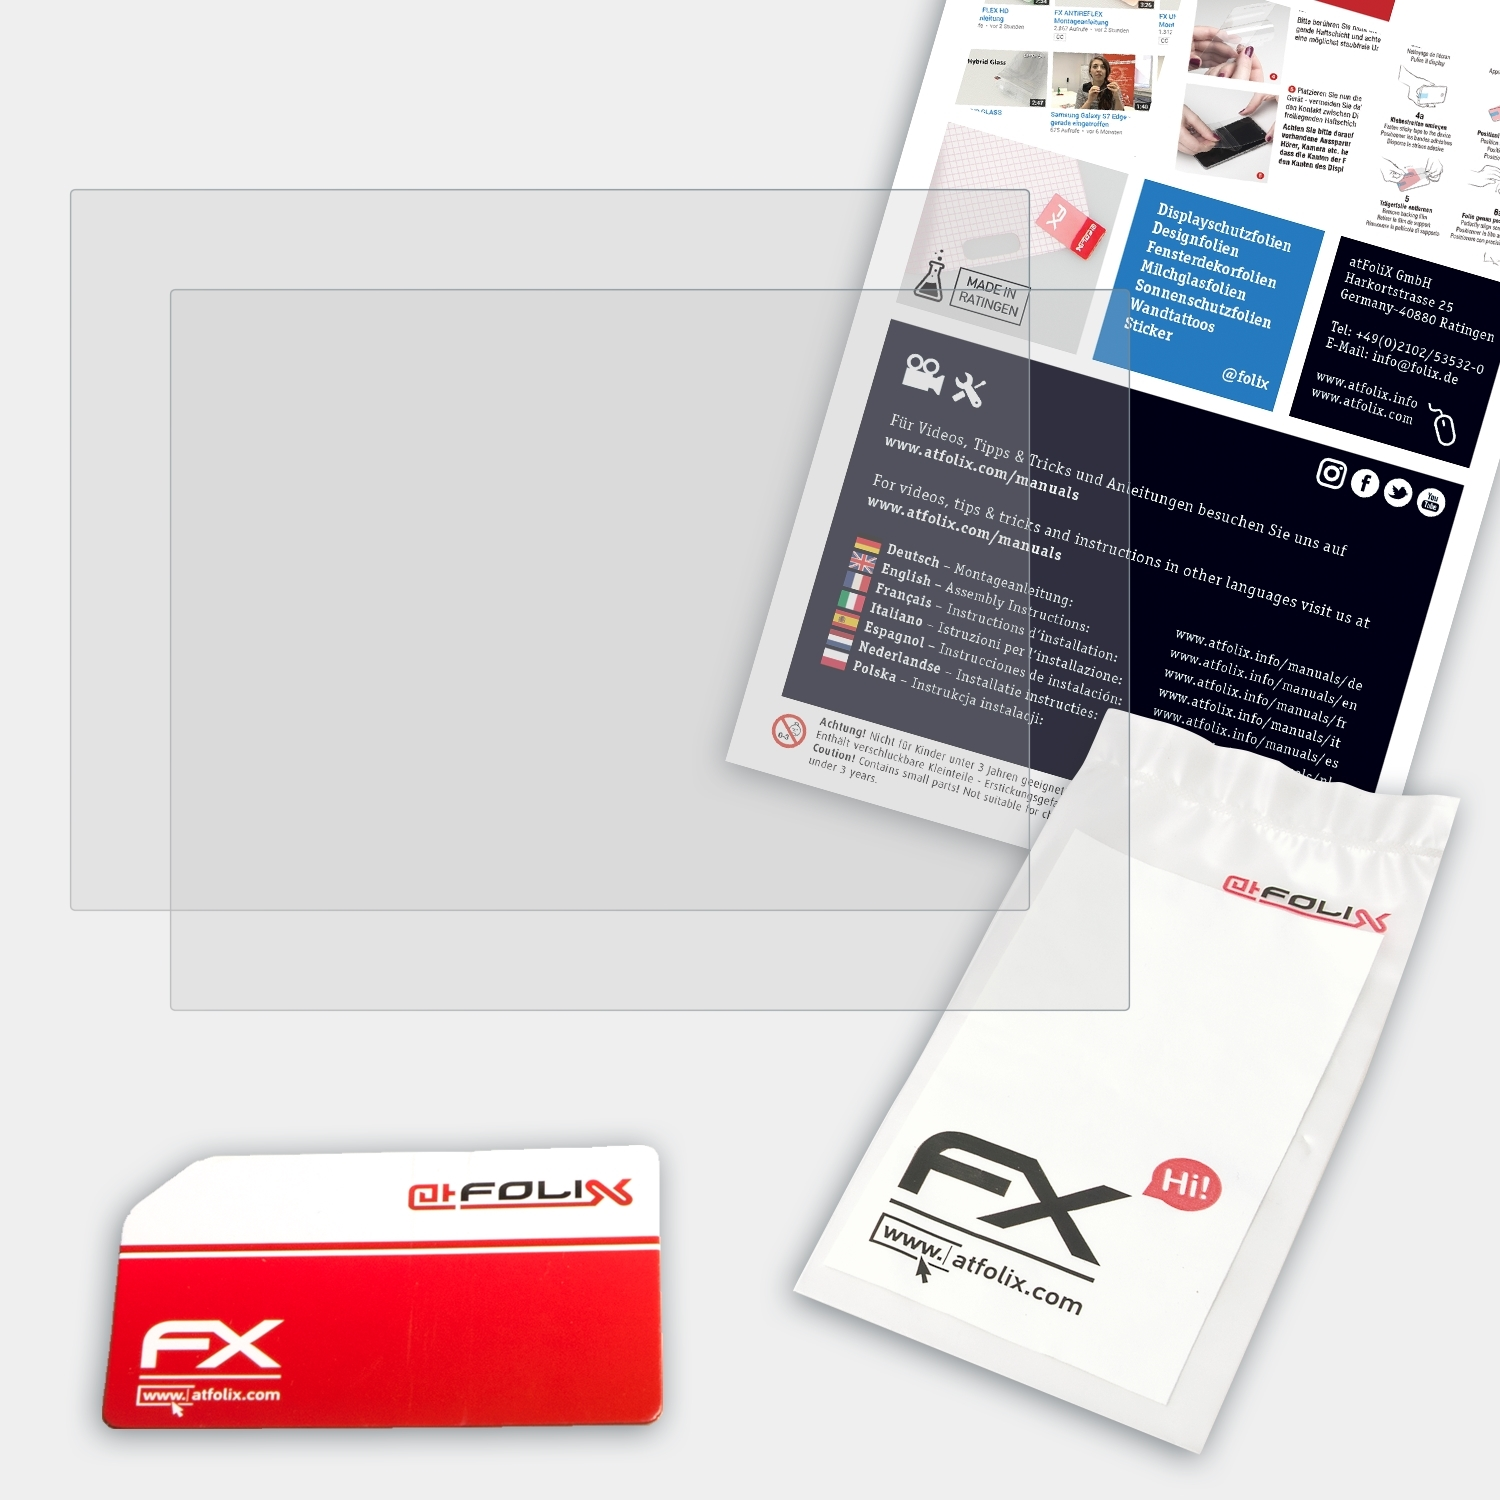 FX-Antireflex ToughBook 2x Displayschutz(für ATFOLIX Panasonic CF-H2)